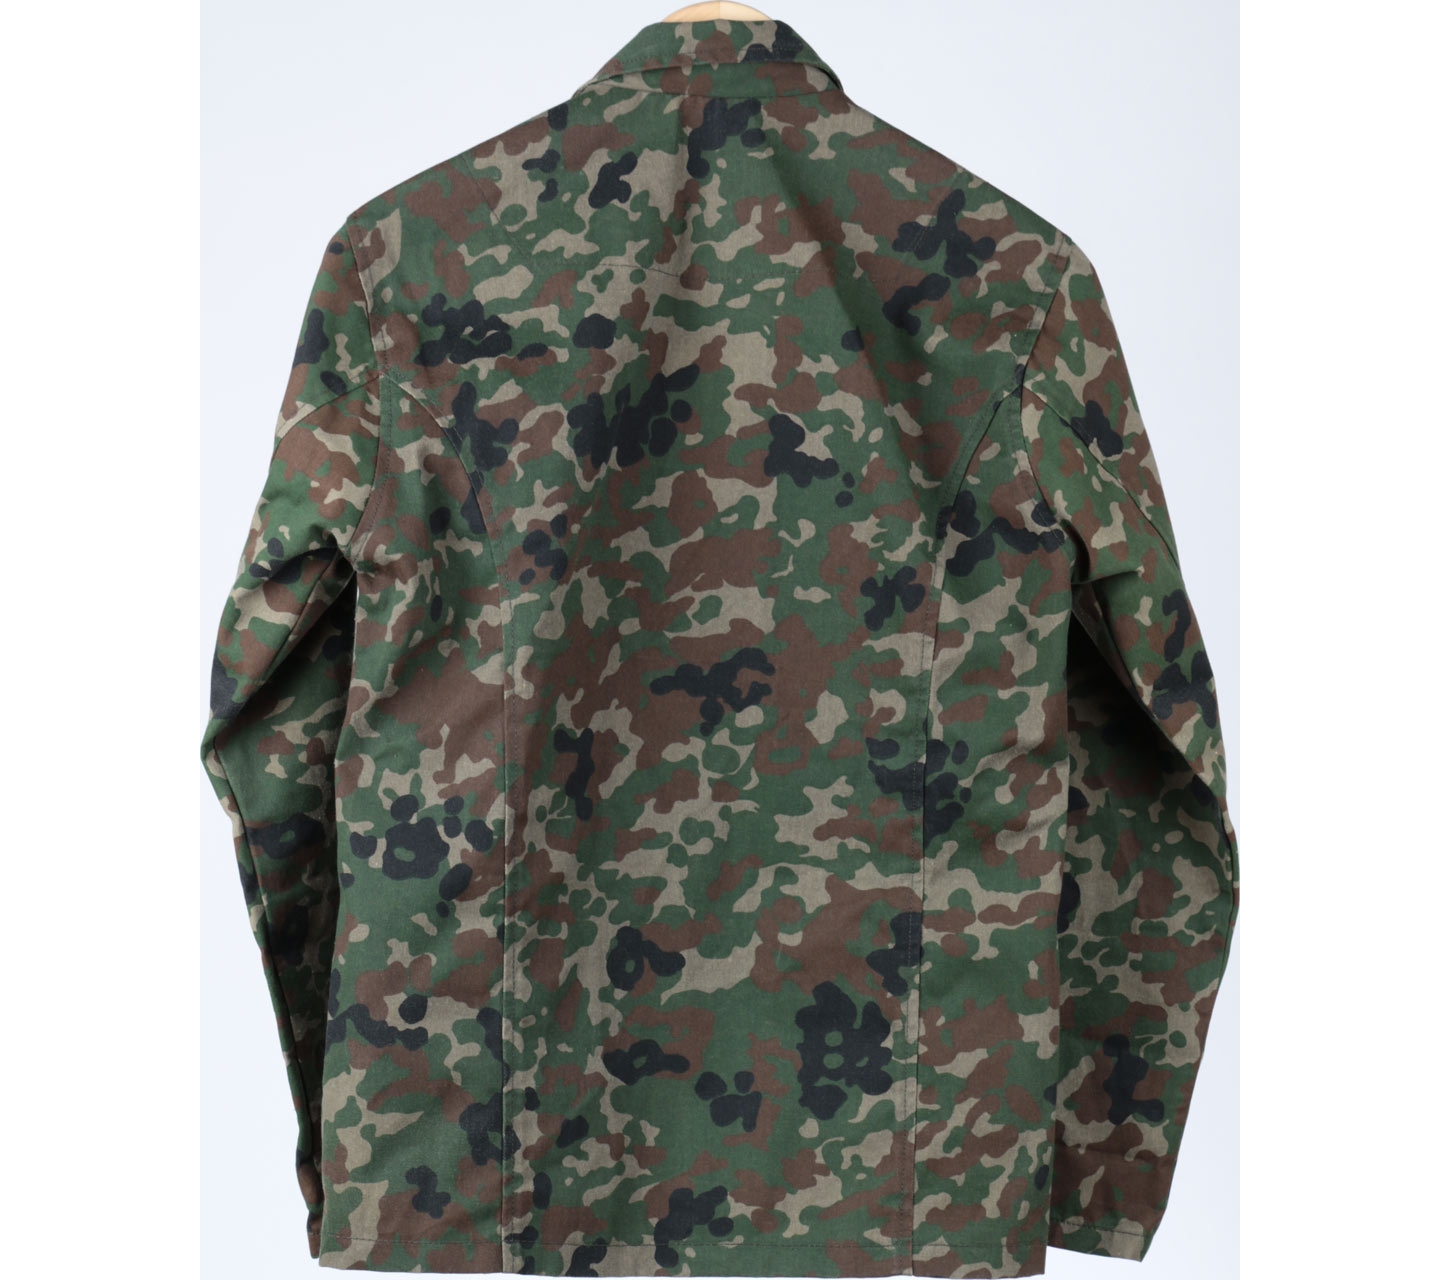 Cozymarkets Green Army Jacket